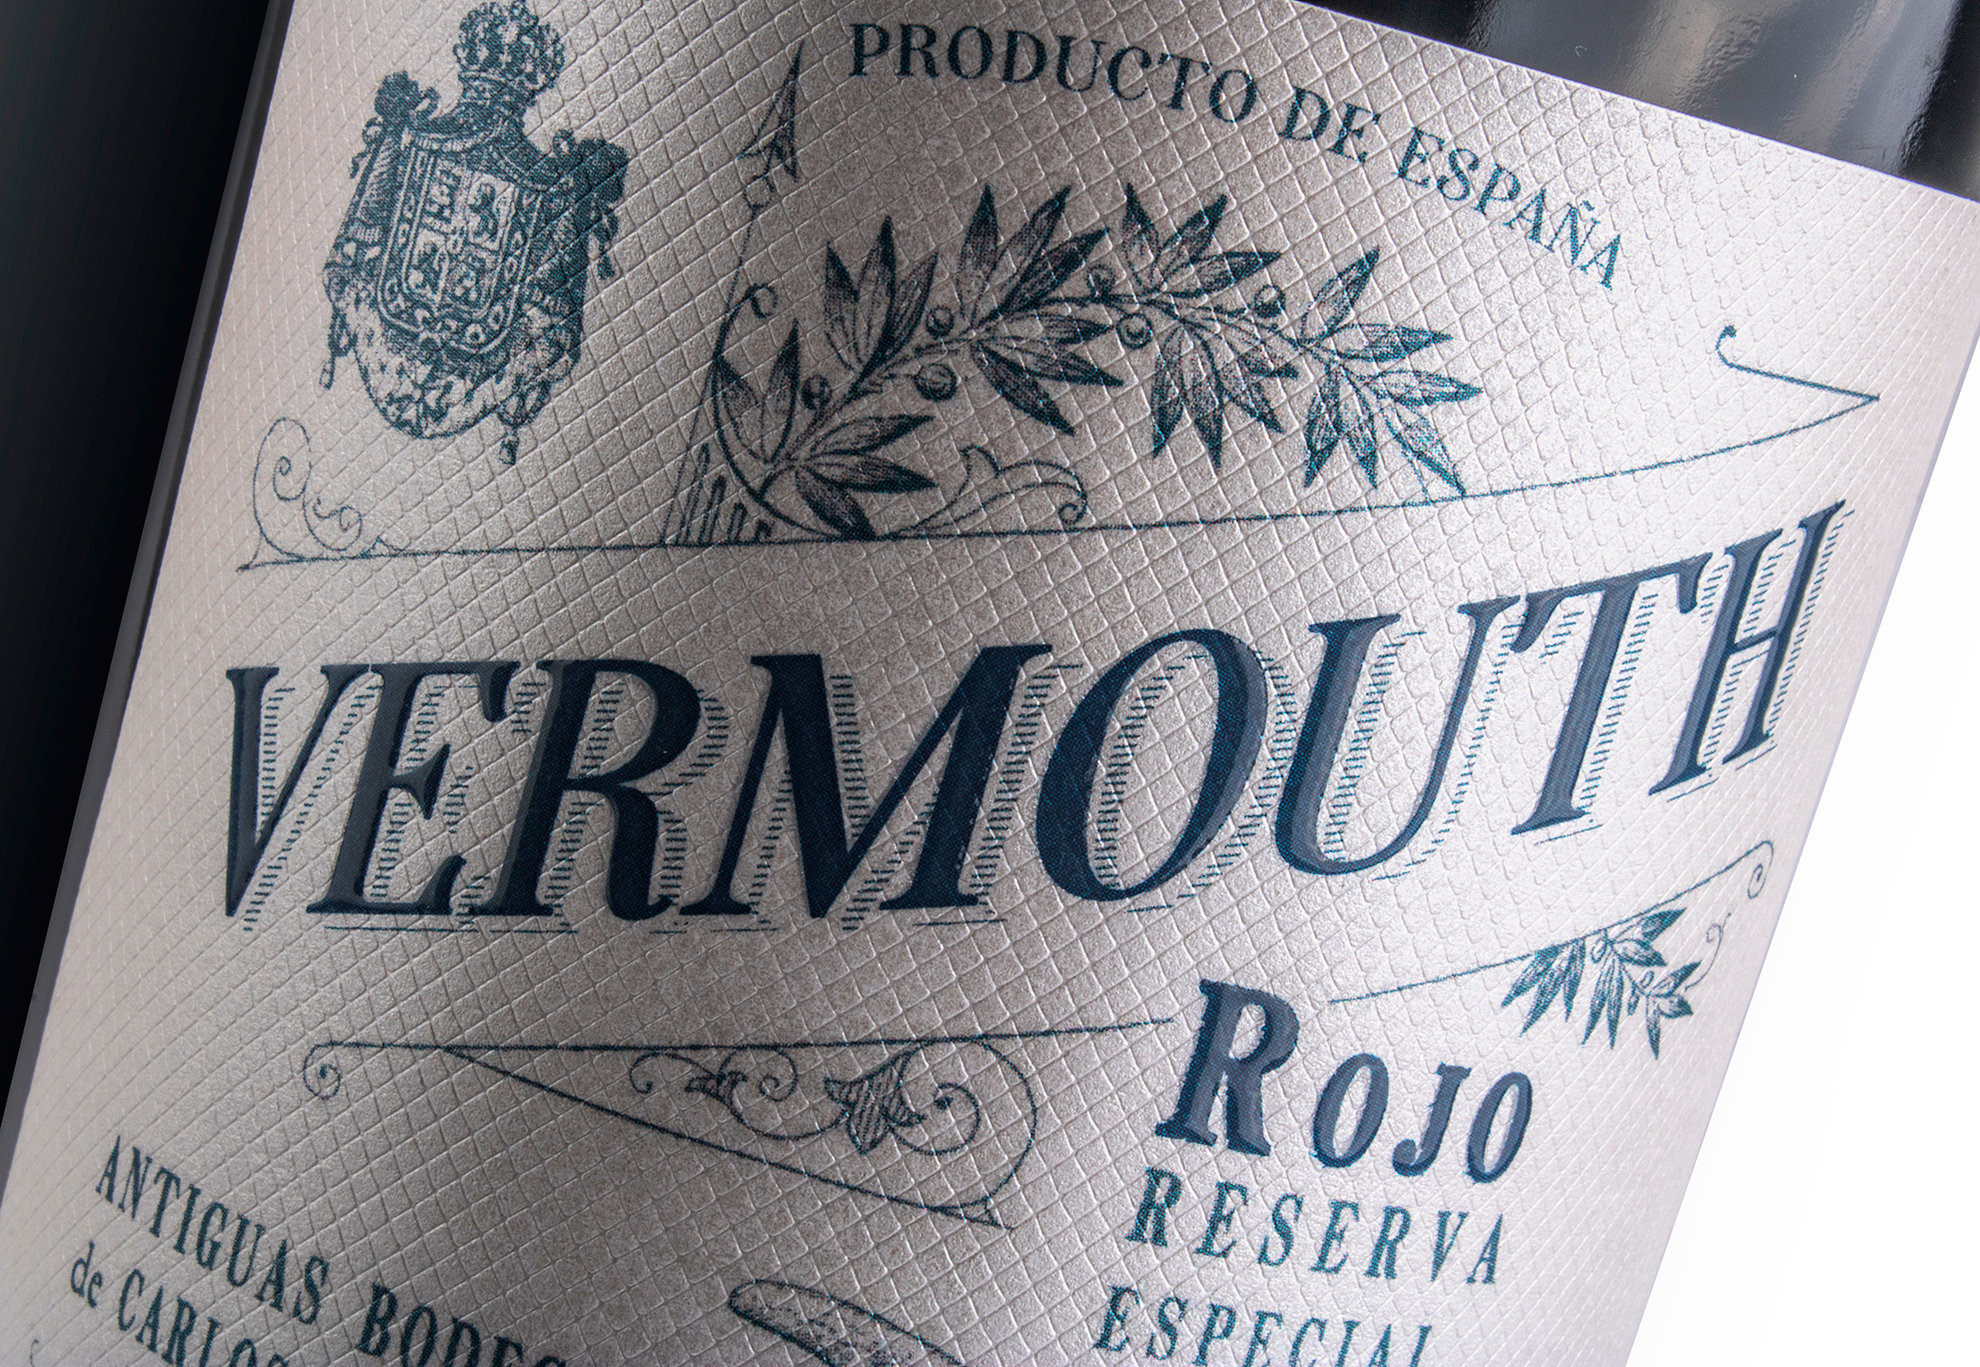 Vermouth Krauel restyling de un clásico. Diseño gráfico de etiquetas para vermouth.